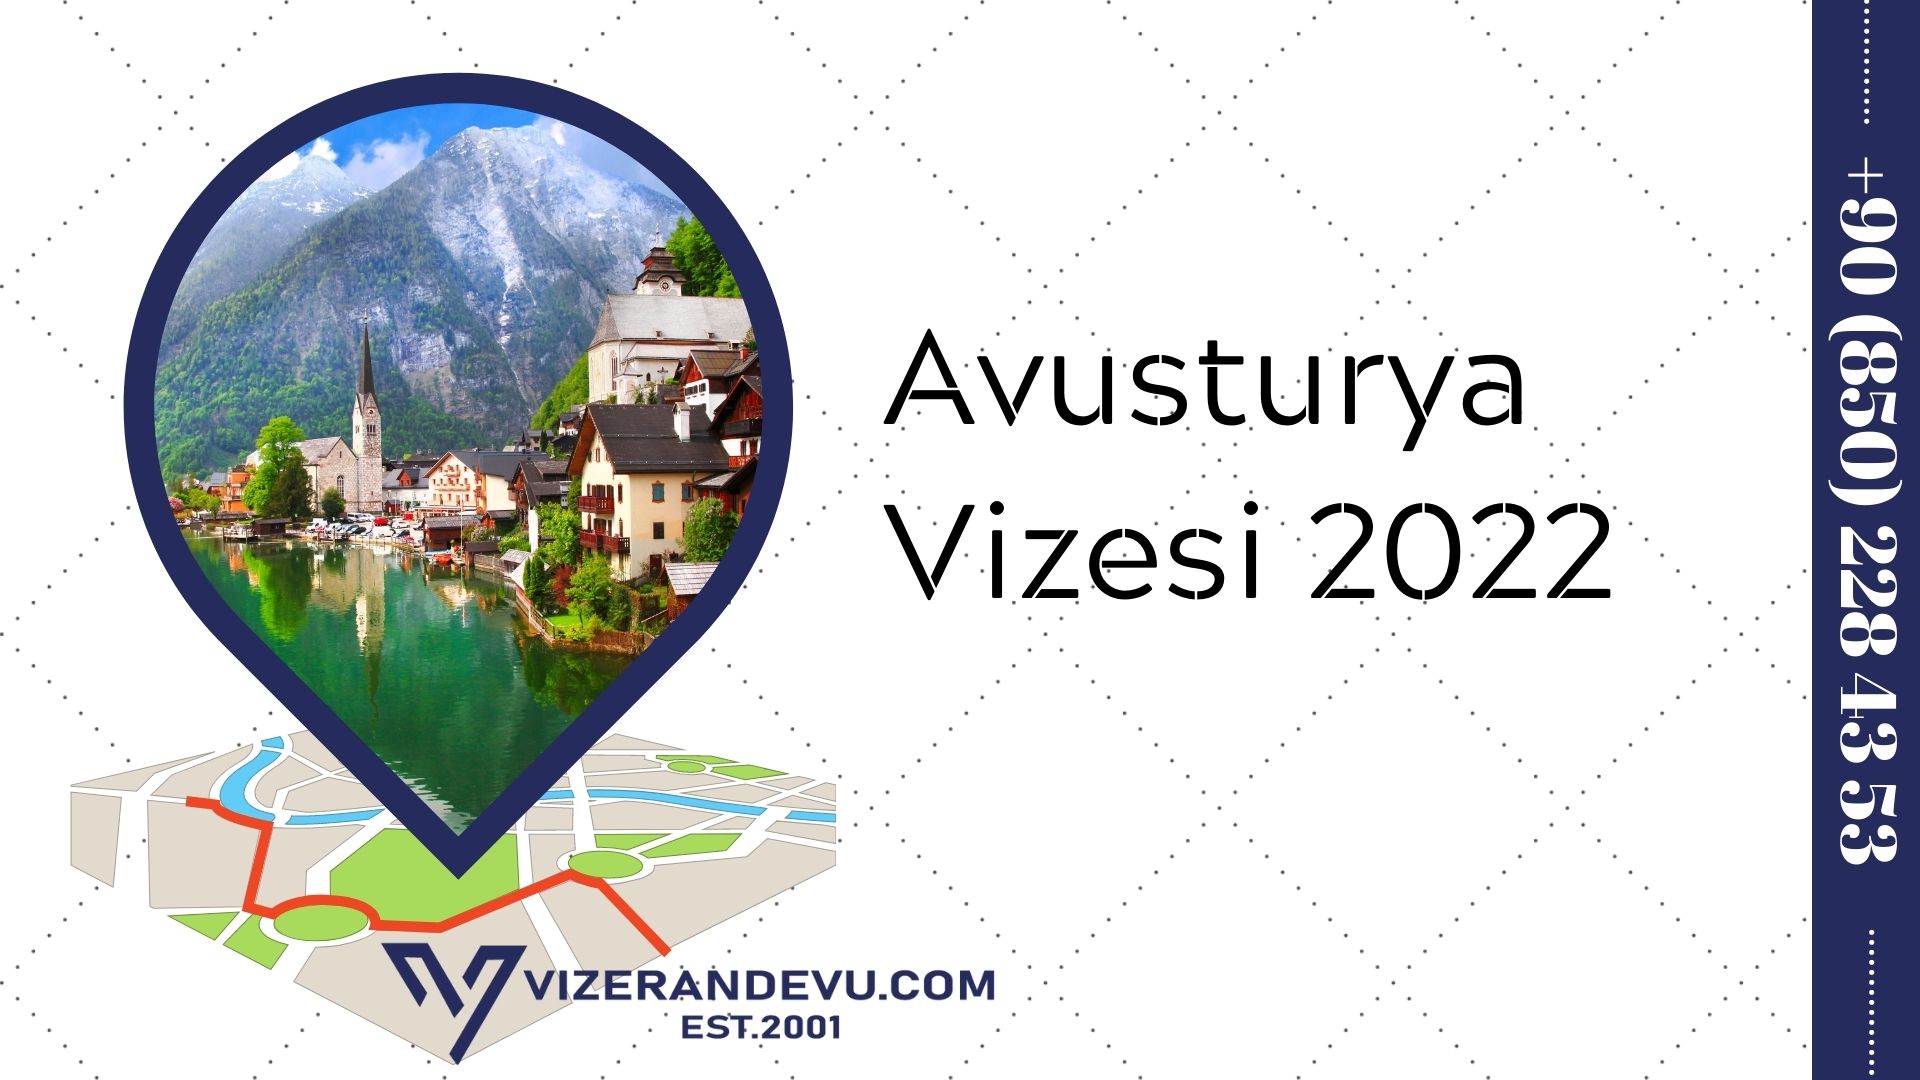 Avusturya Vizesi 2022